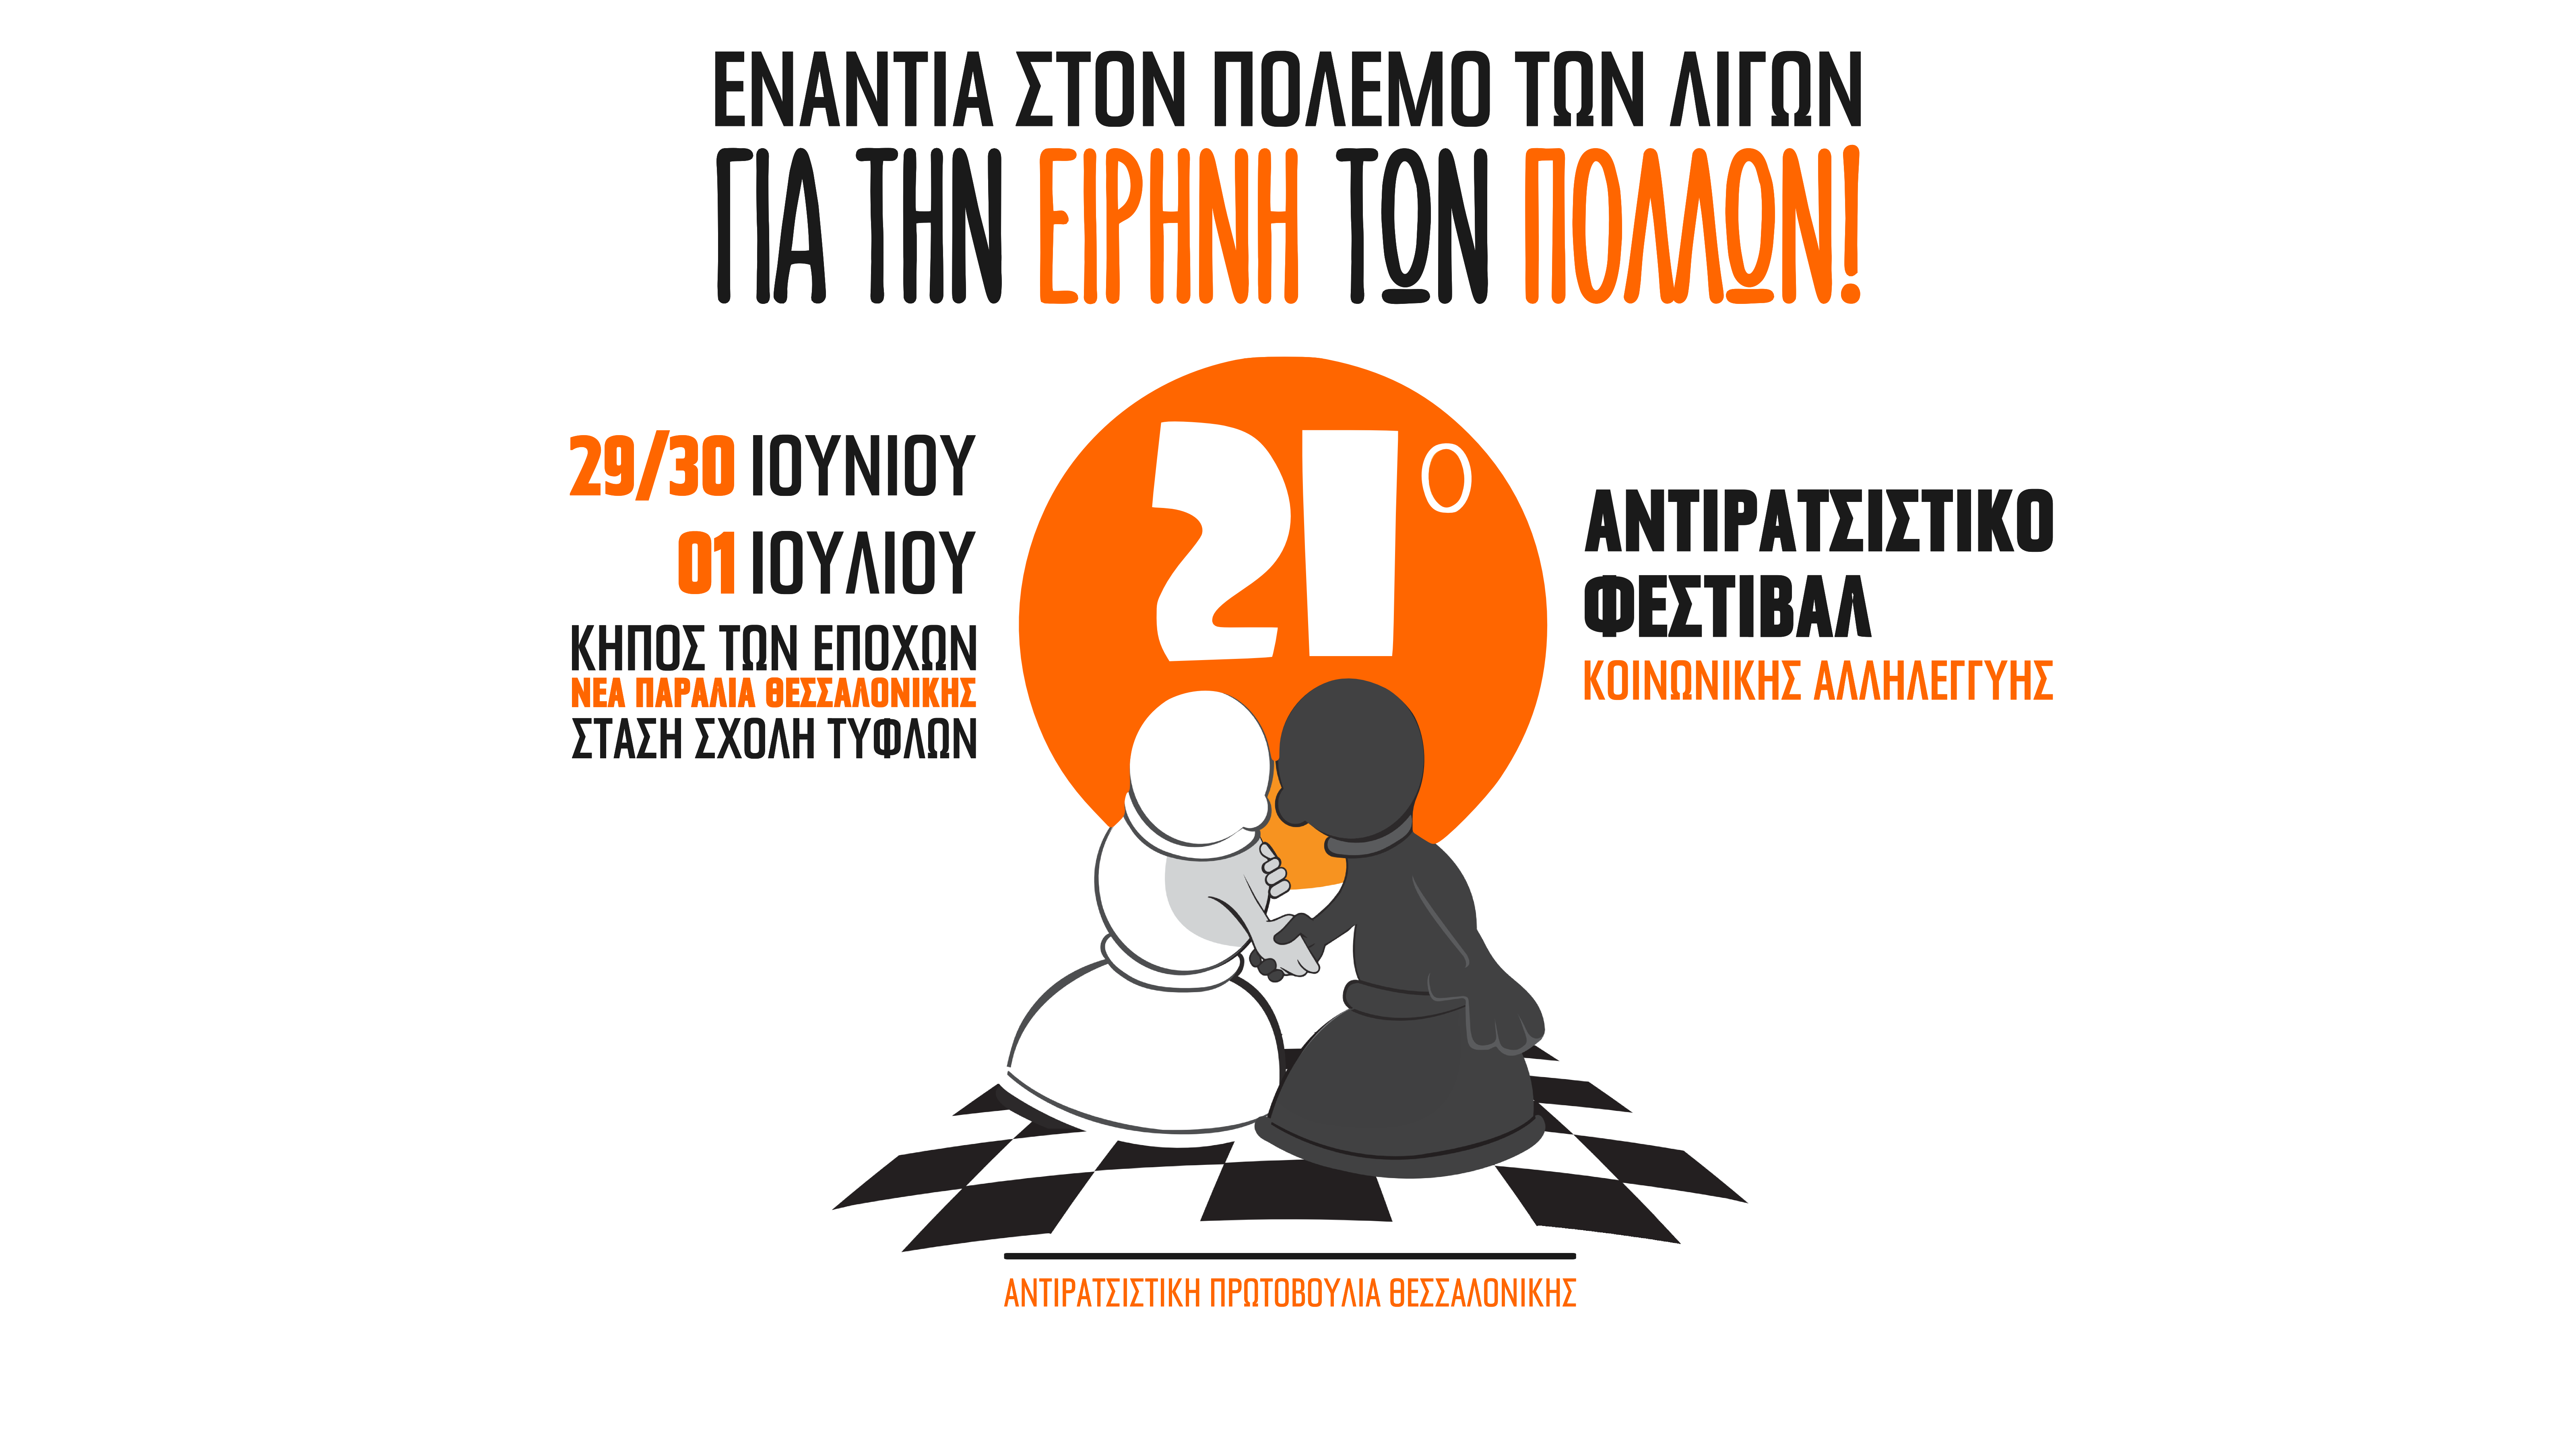 21ο Αντιρατσιστικό Φεστιβάλ Θεσσαλονίκης: Ενάντια στον πόλεμο των λίγων, για την ειρήνη των πολλών